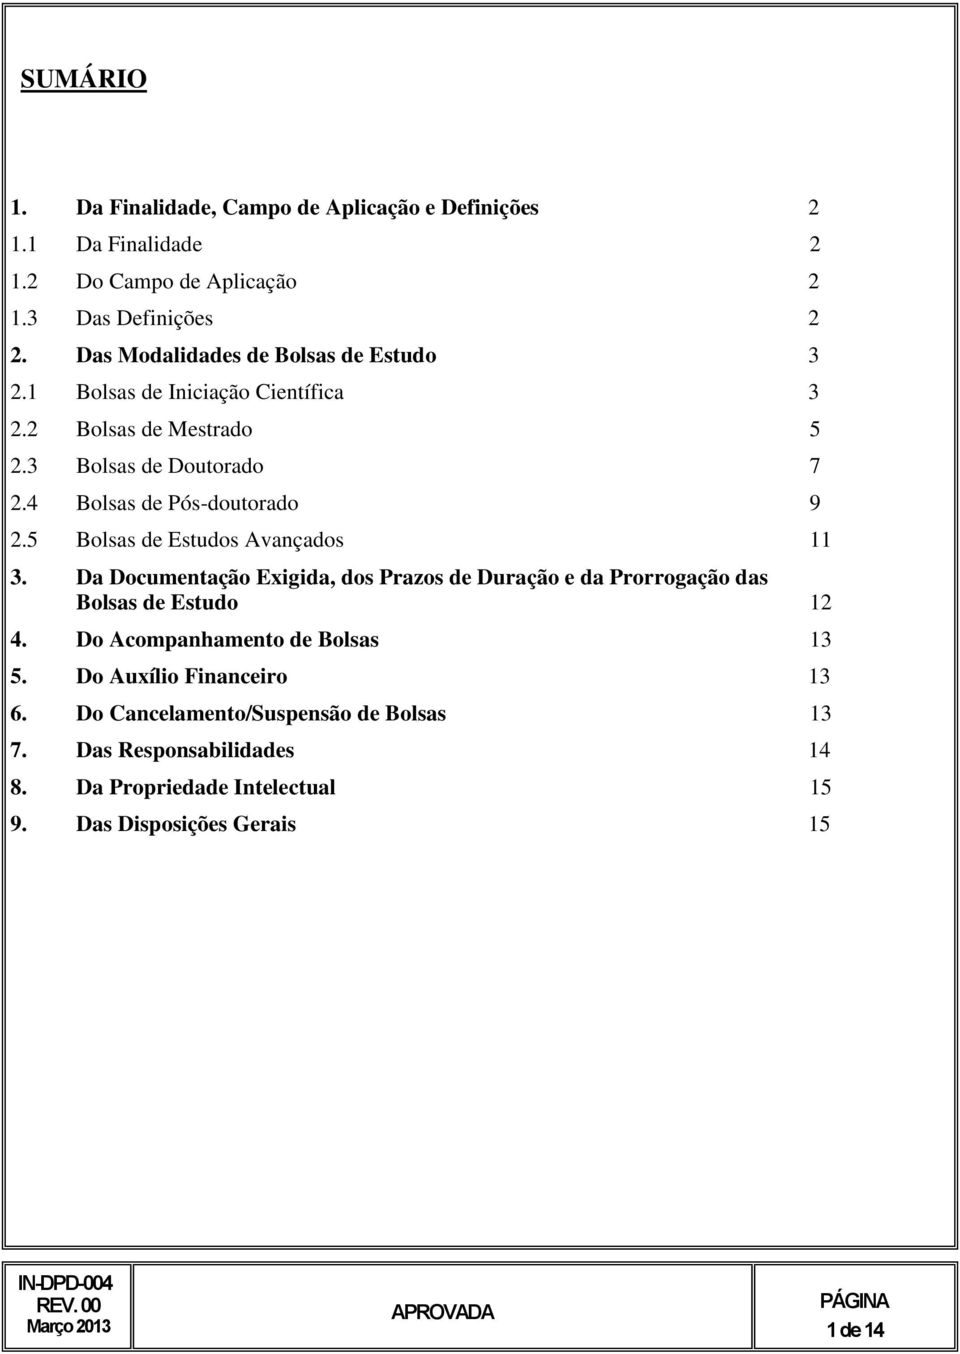 4 Bolsas de Pós-doutorado 9 2.5 Bolsas de Estudos Avançados 11 3.